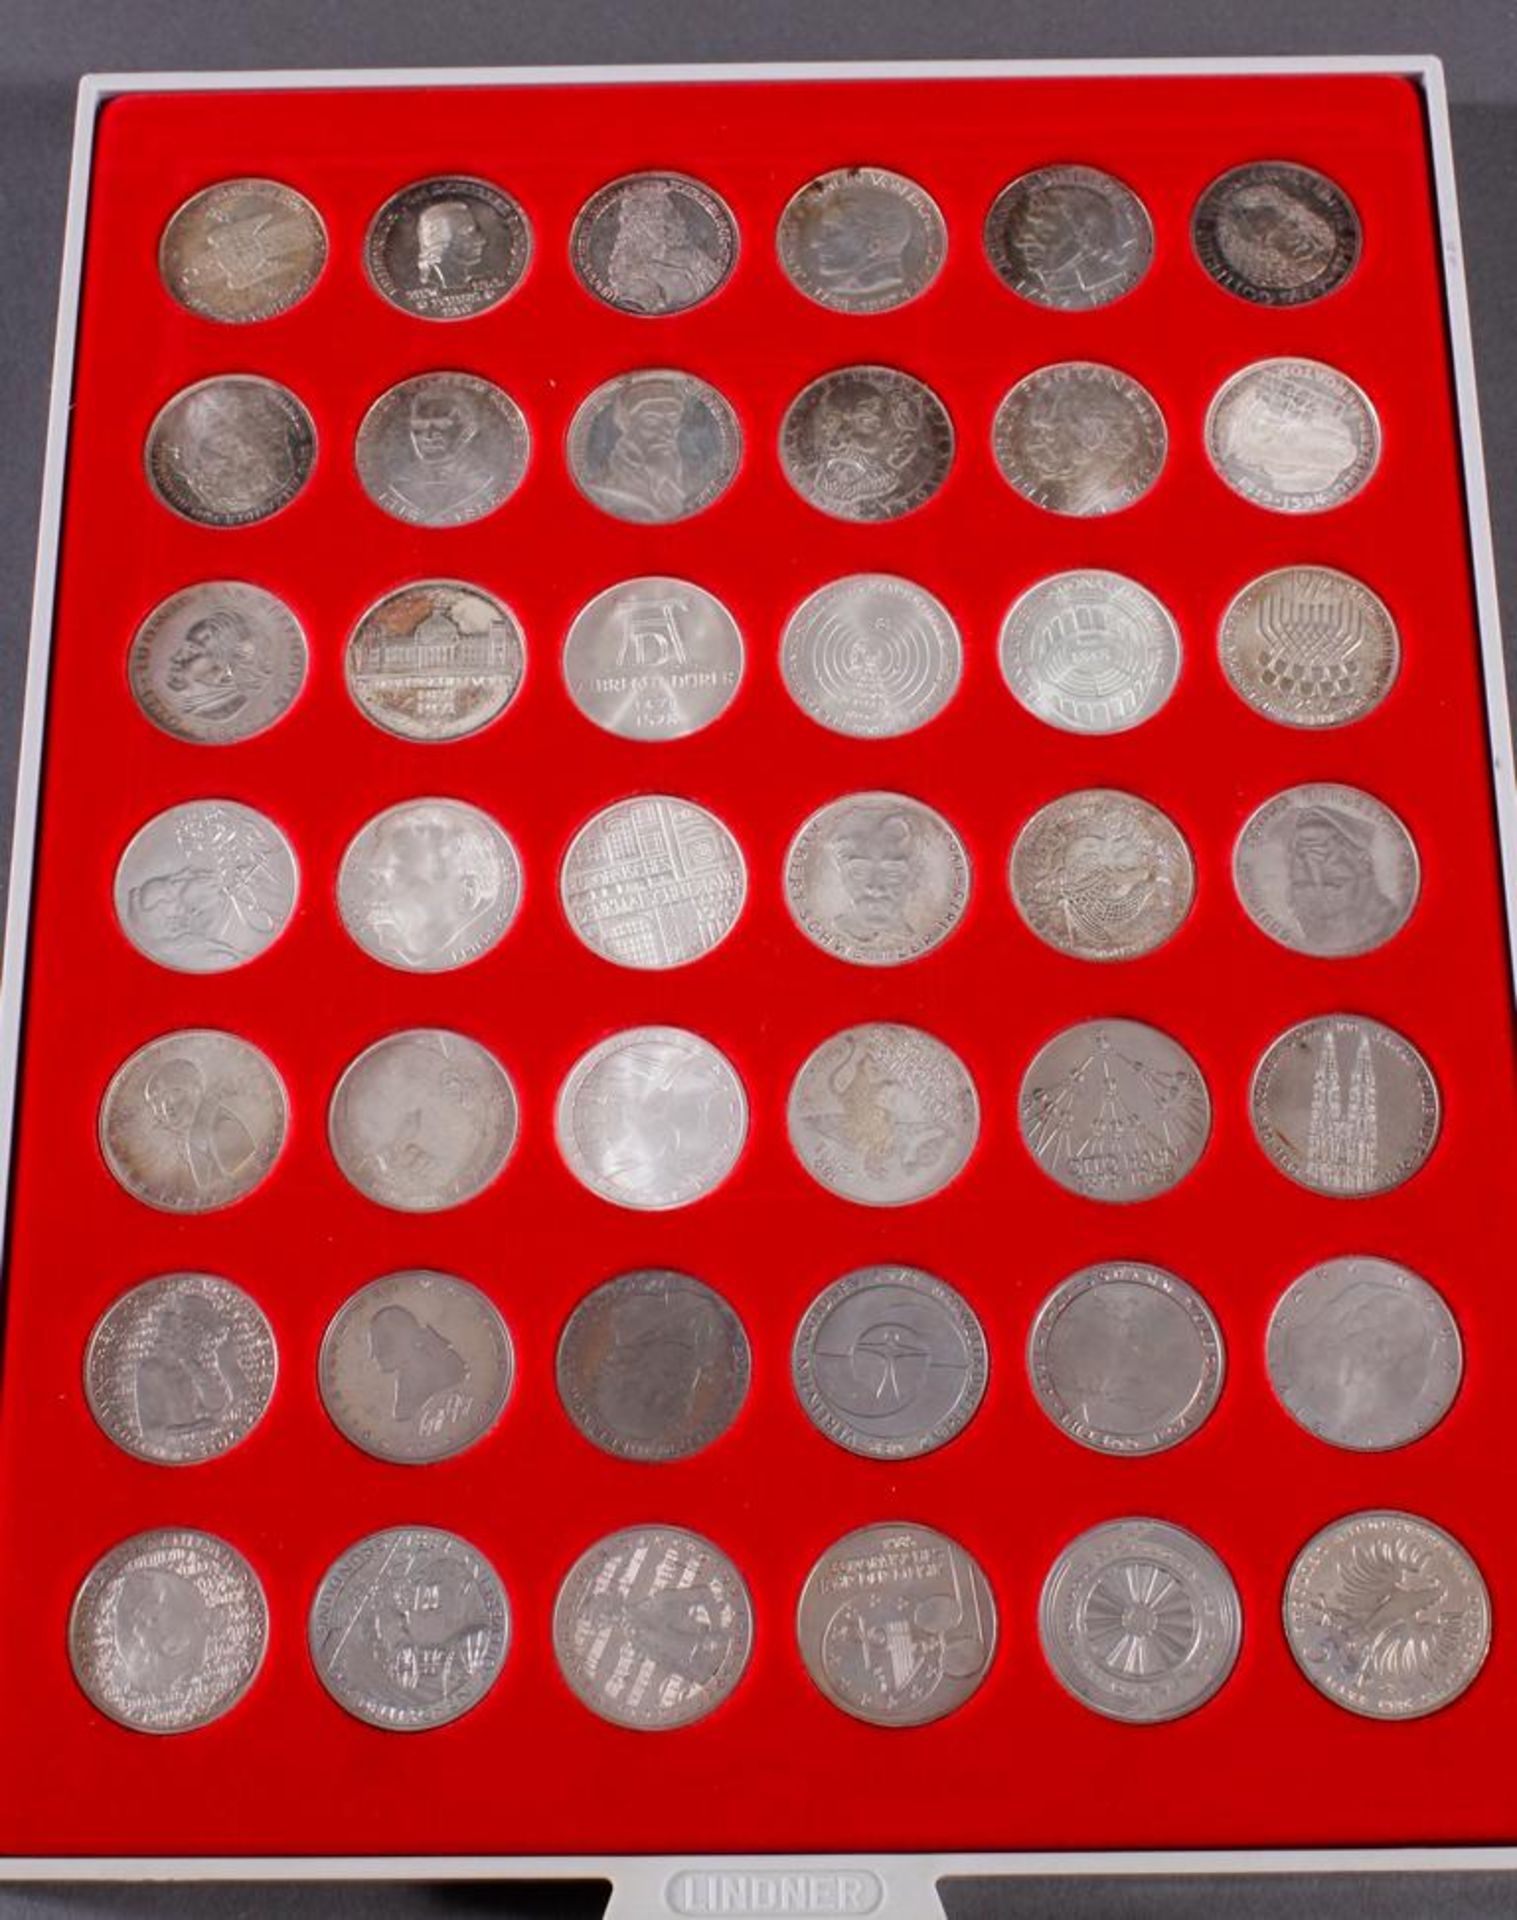 Bundesrepublik Deutschland, Komplettsatz der 5 DM GedenkmünzenAlle 43 Gedenkmünzen inklusive dem - Bild 2 aus 3